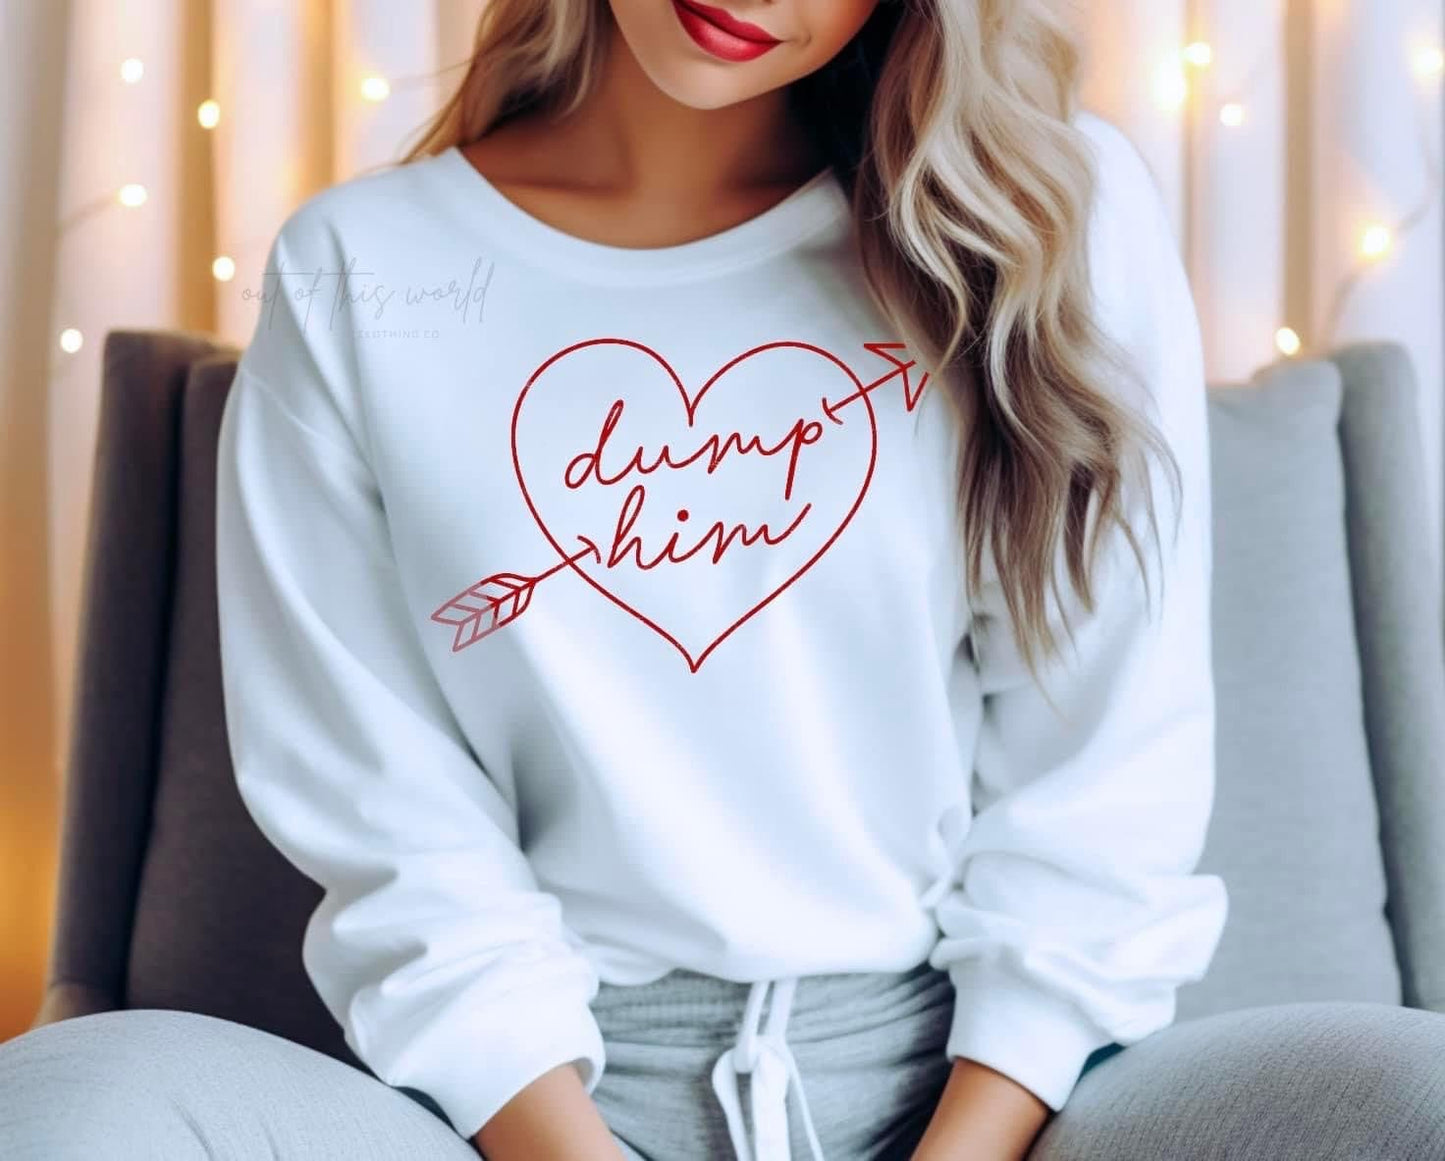 Dump Him, Anti Valentine’s Day sweatshirt, cozy pink sweatshirt